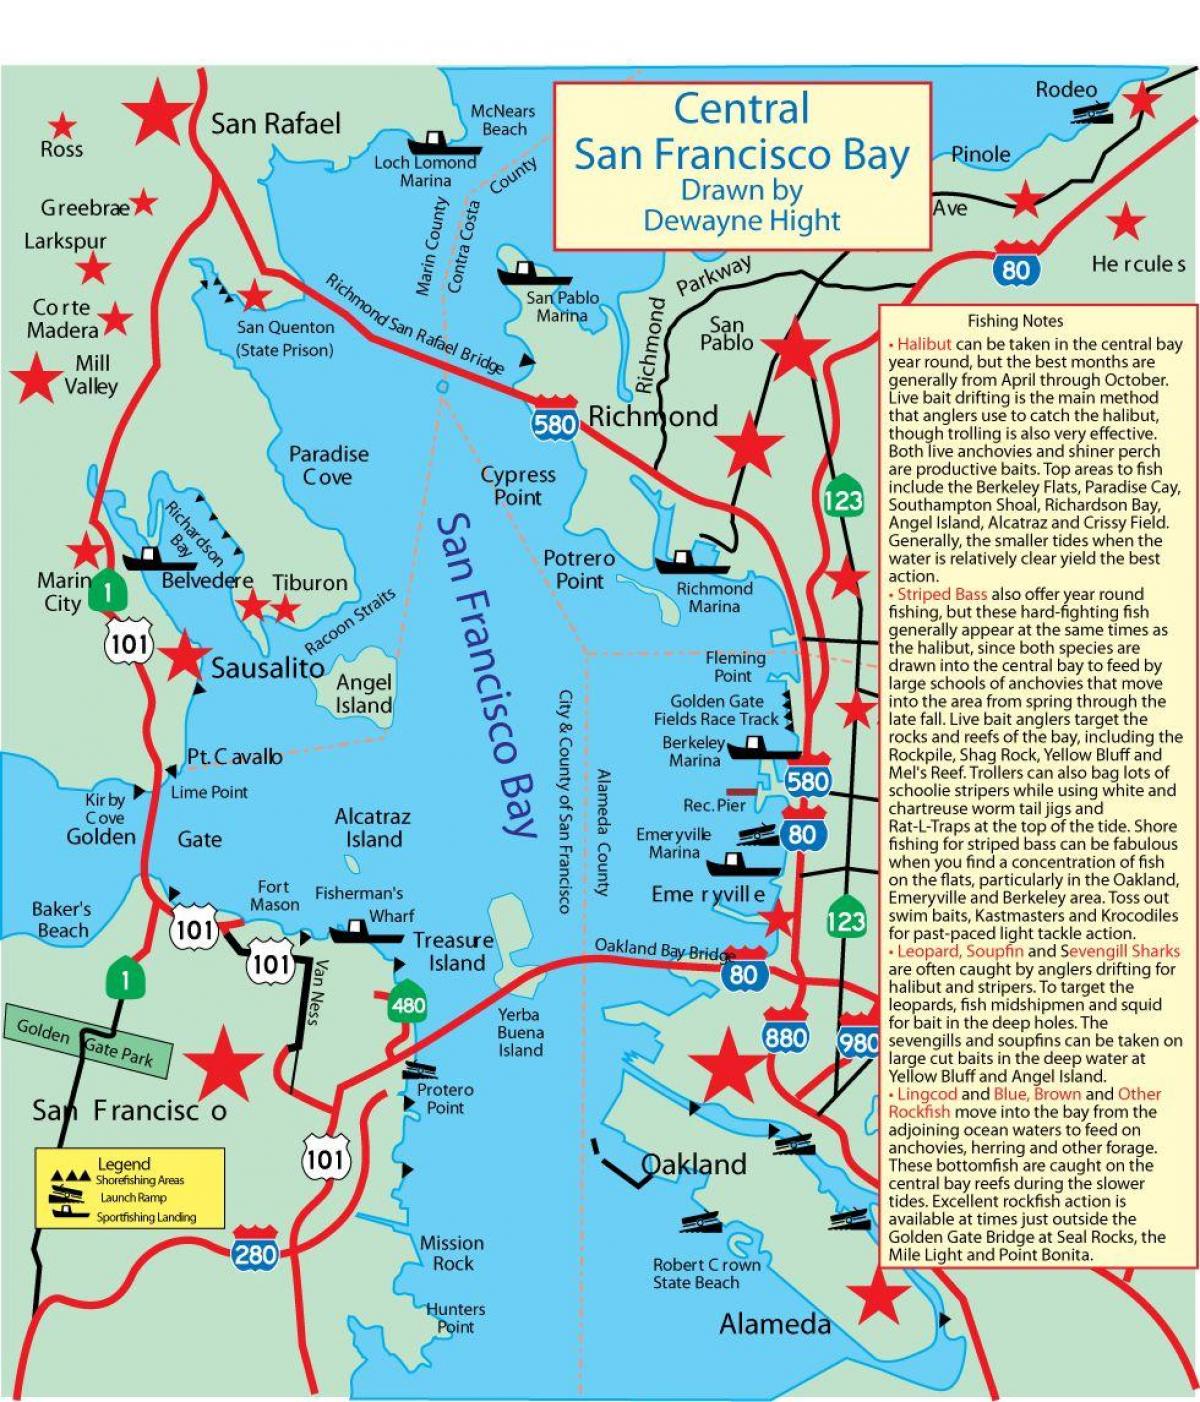 Газрын зураг нь Сан Франциско бэй загас 